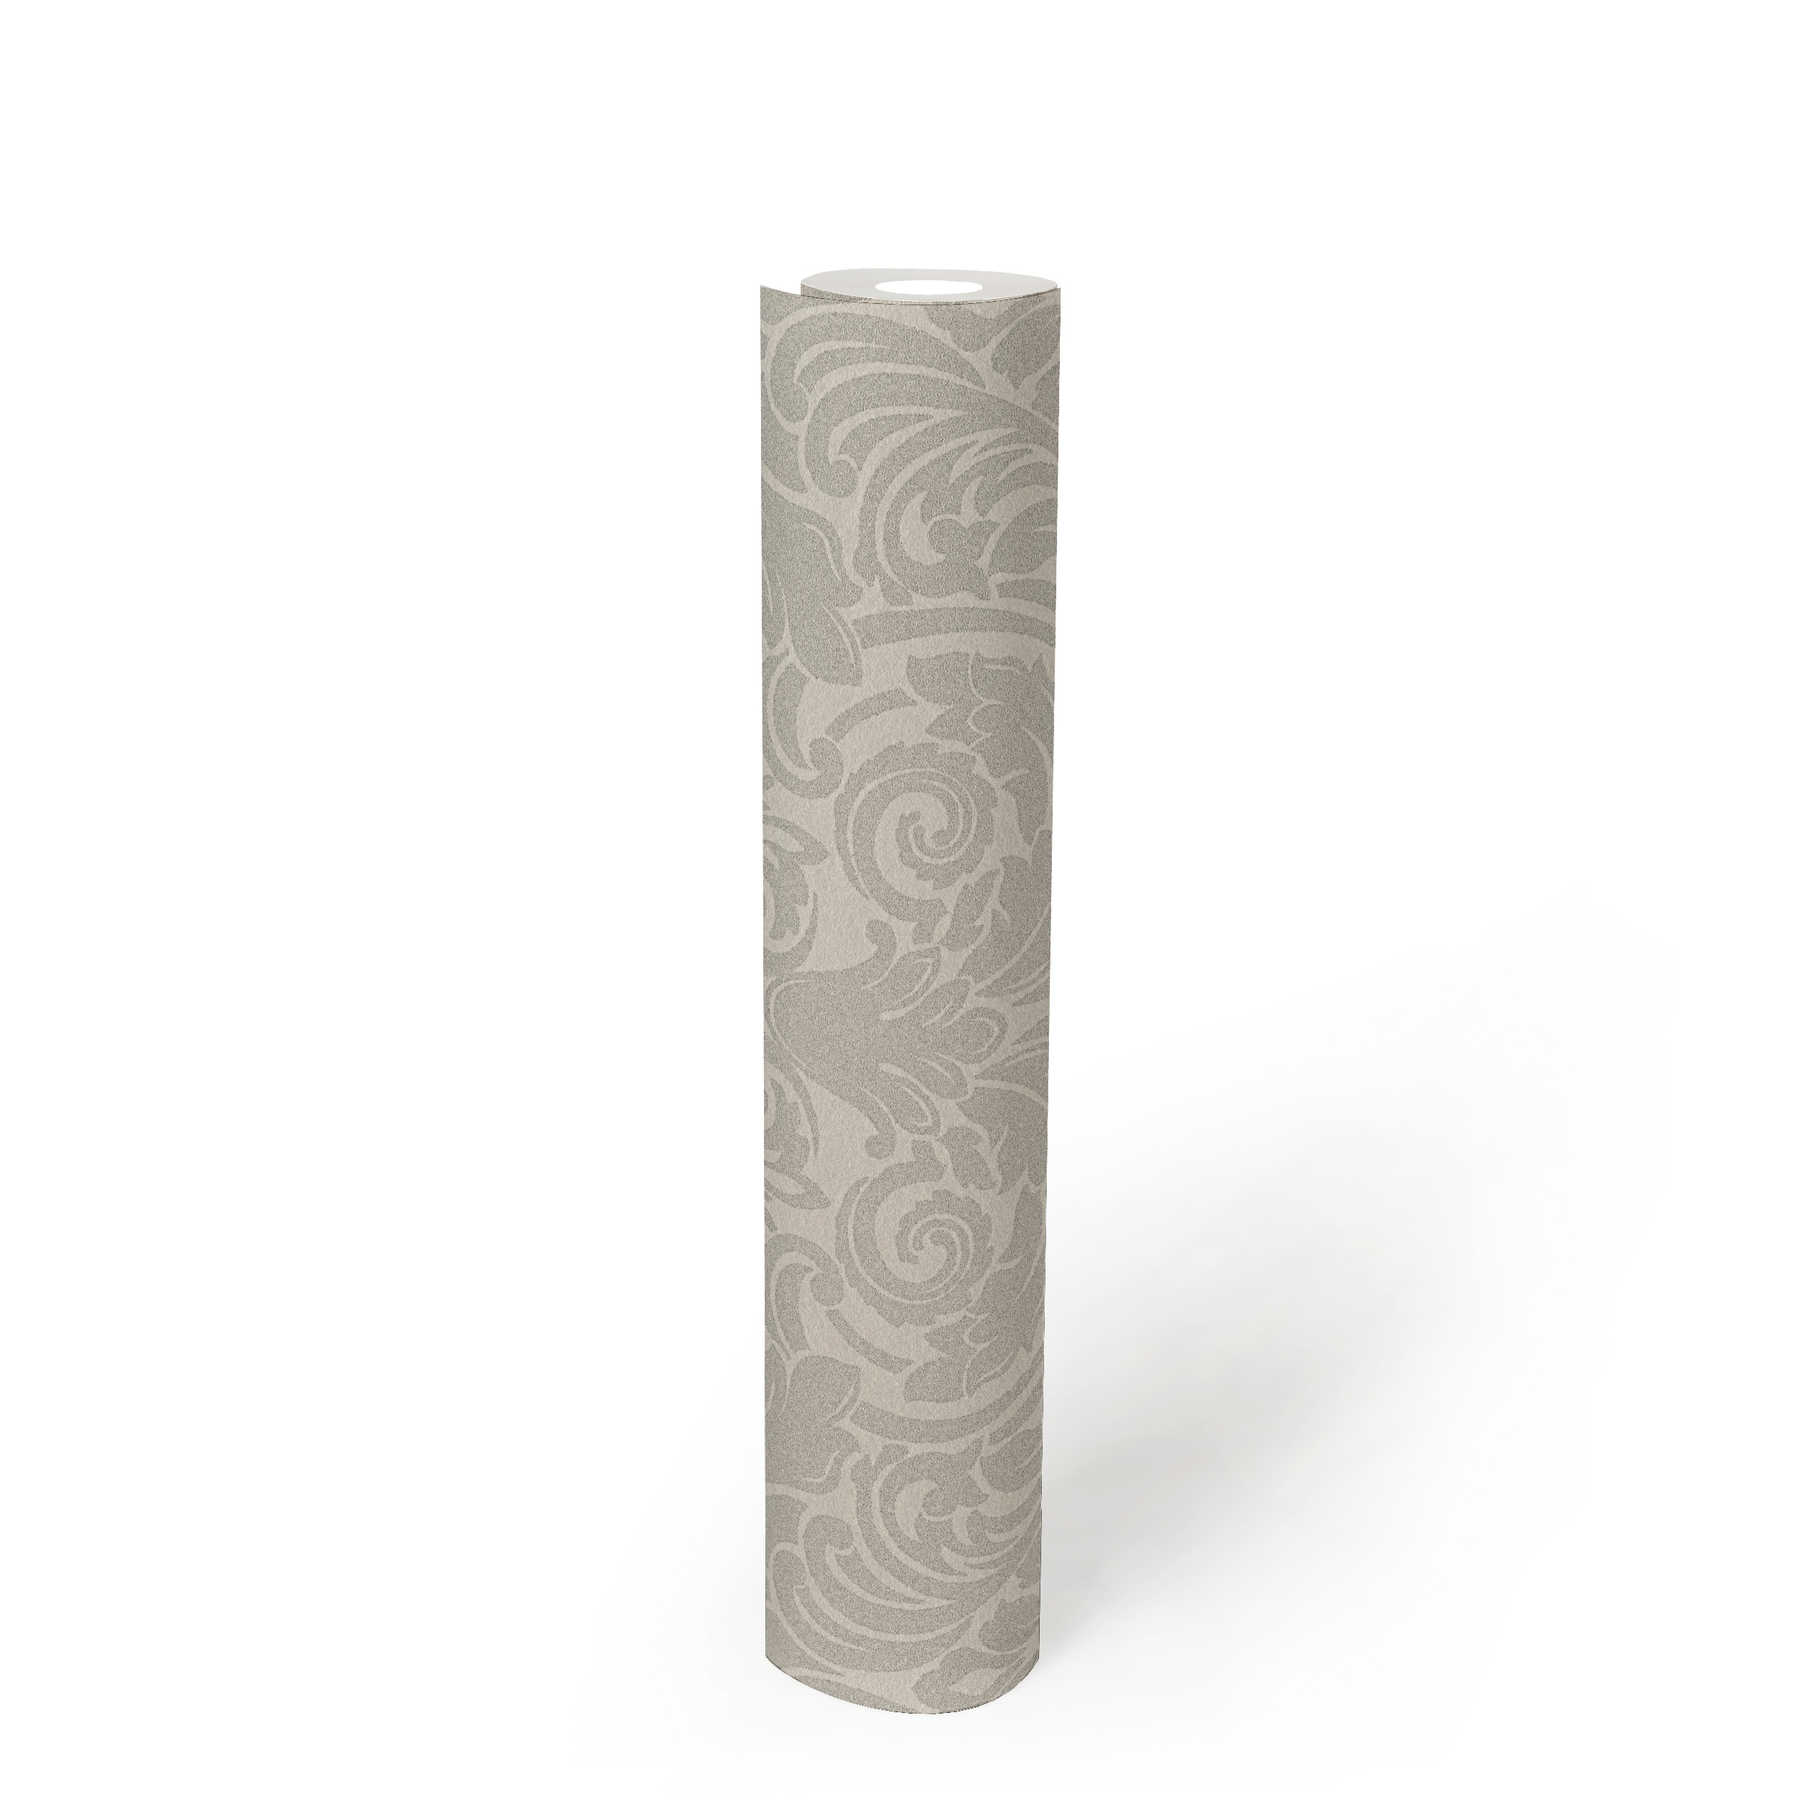             Papel pintado ornamental con efecto metálico y diseño floral - plata, crema
        